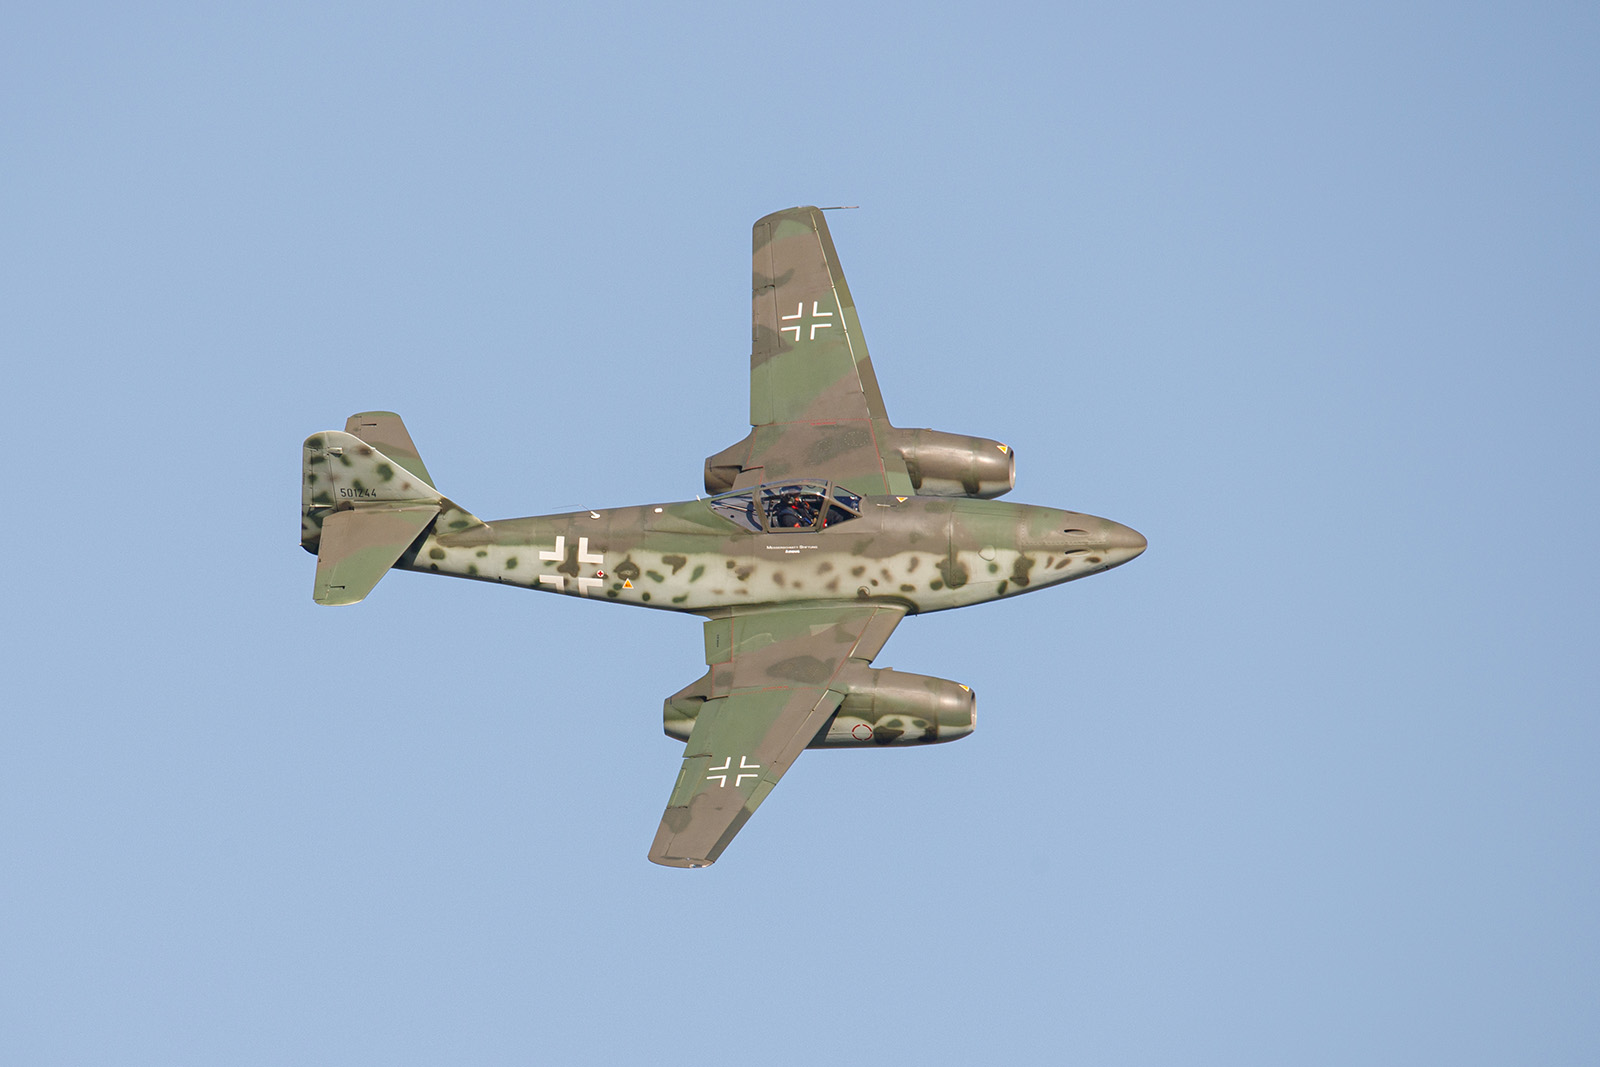 Messerschmitt ME262 en vol (les puristes auront noté le mauvais positionnement des cocardes sur les ailes)